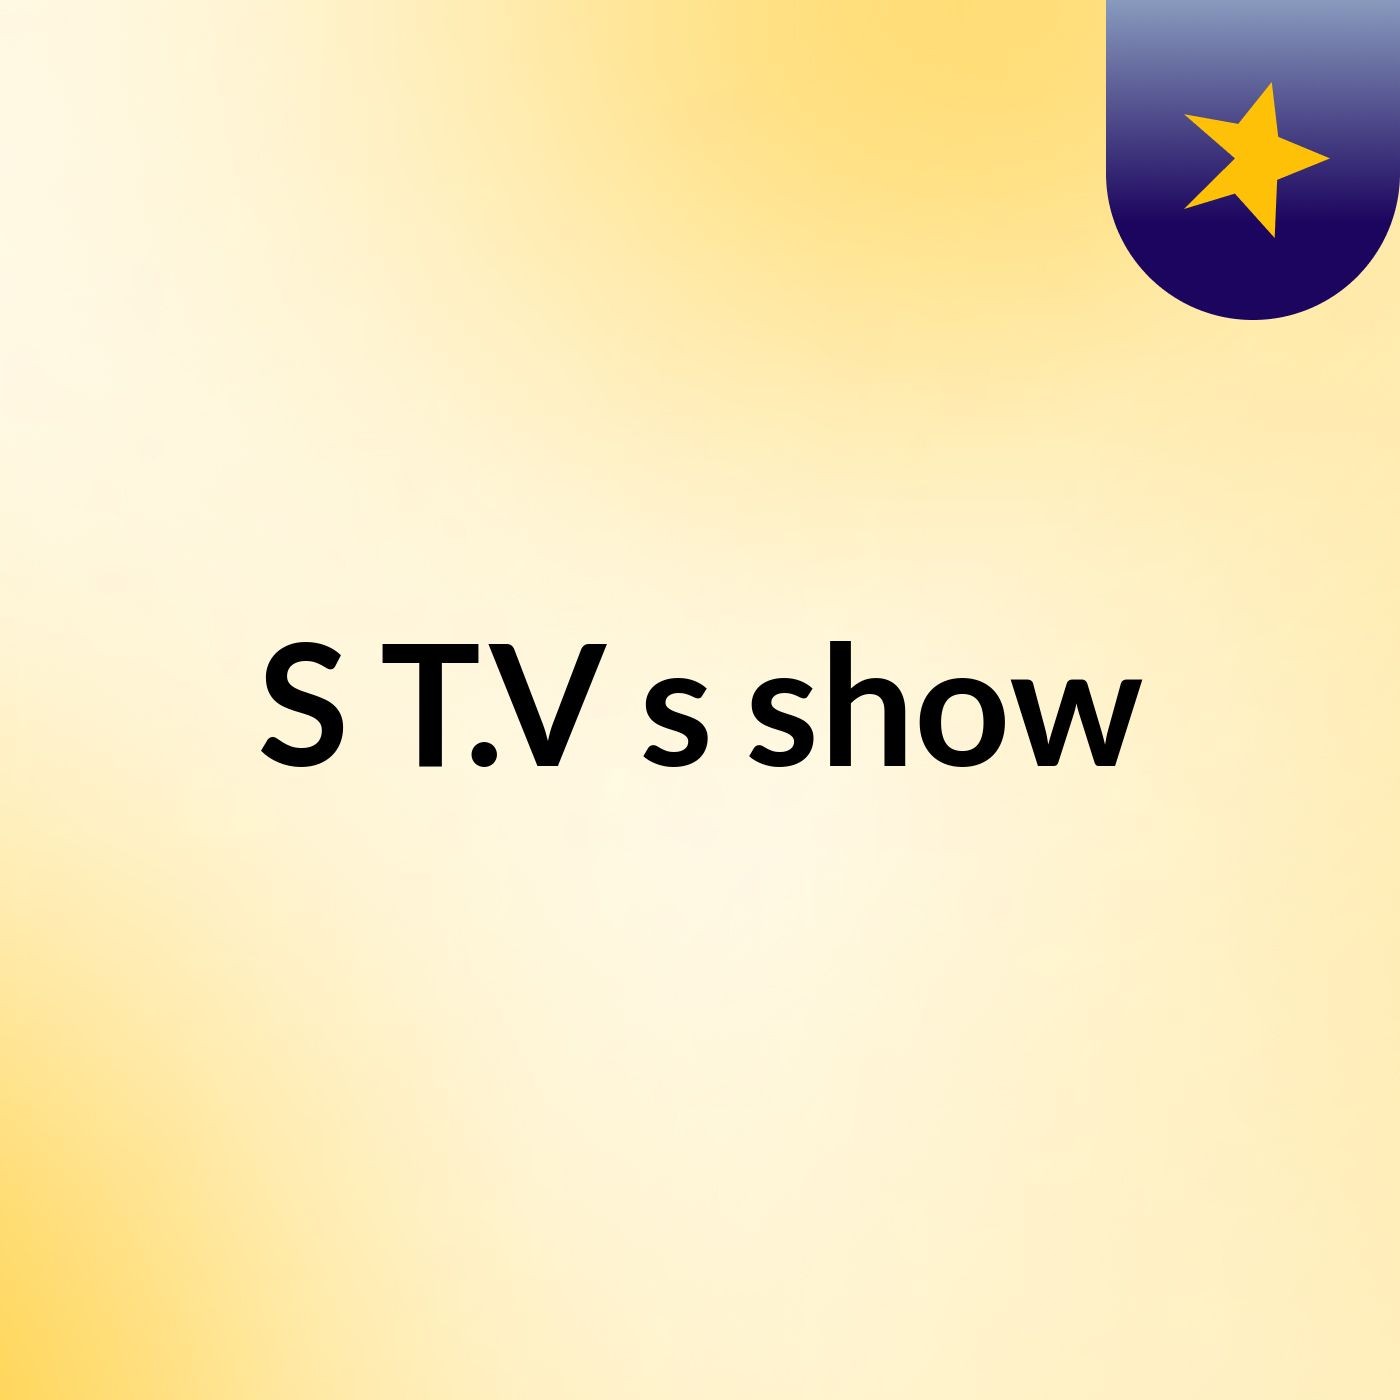 S T.V's show